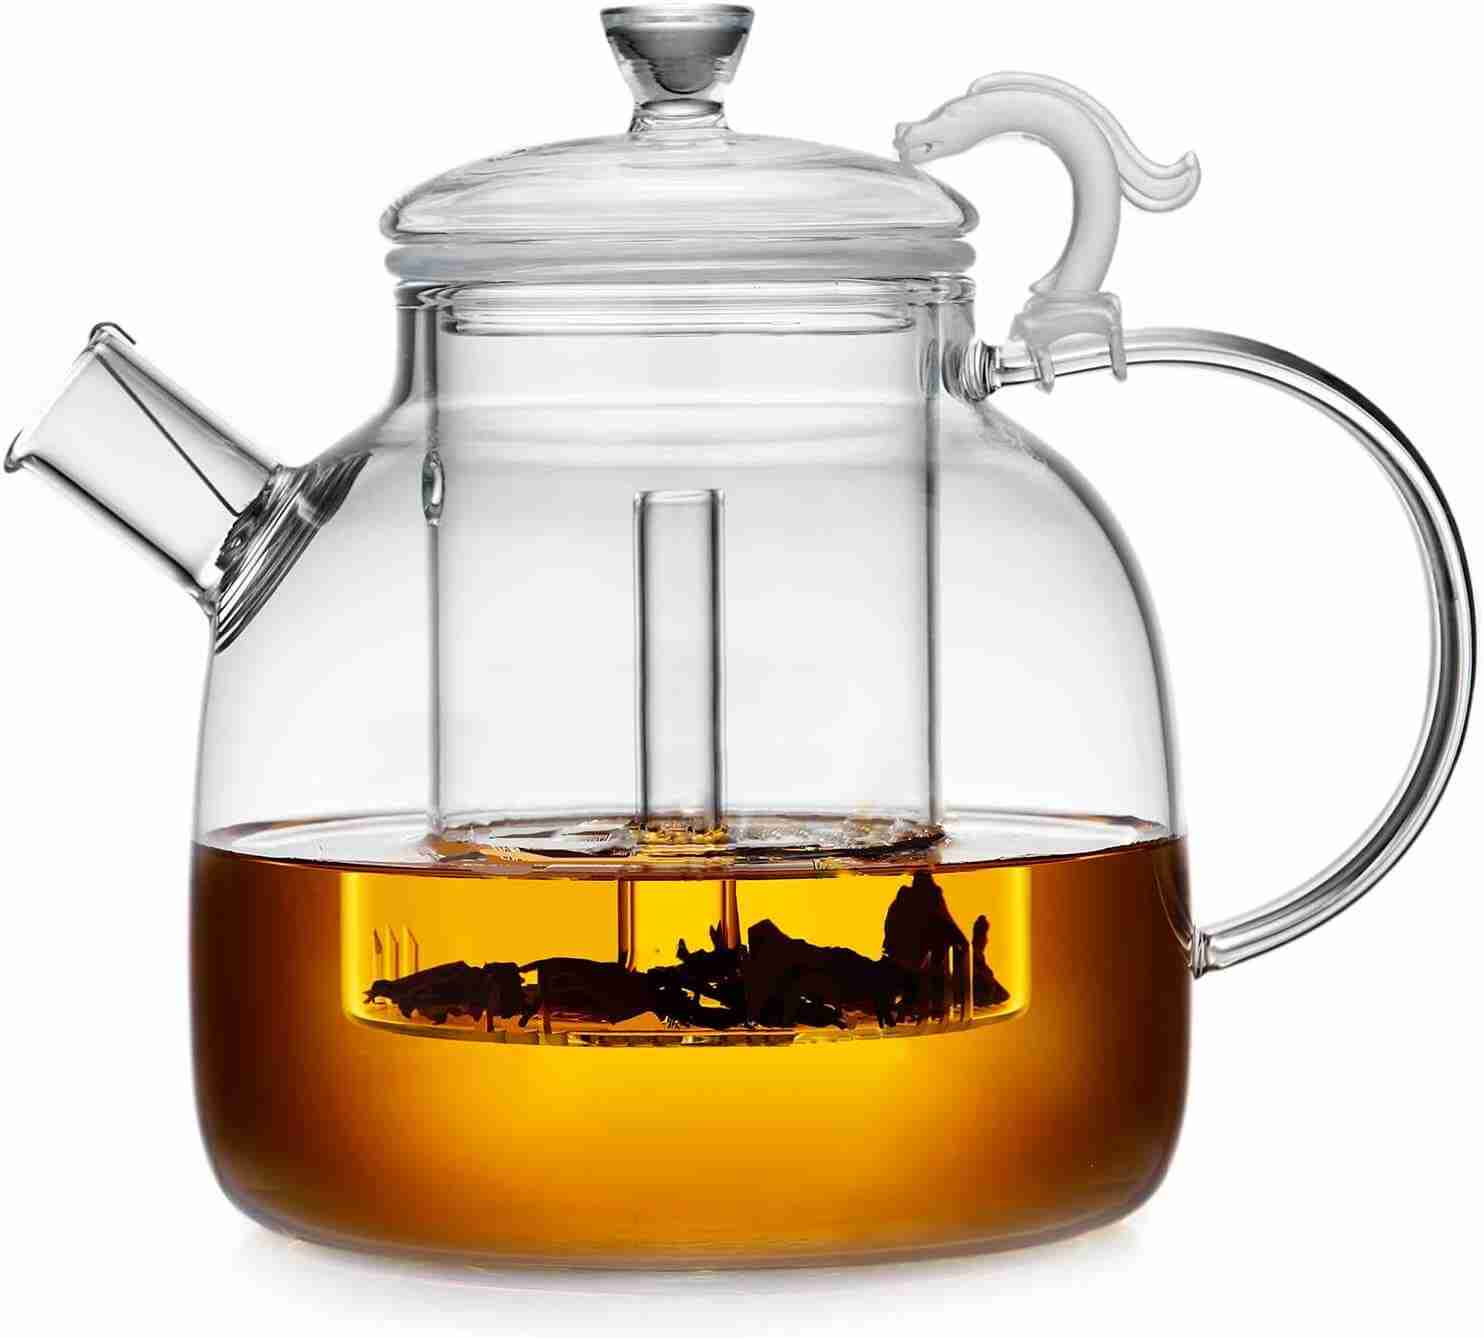 Borosilicate Glass Tea Pot is borosilicate glass safe or toxic